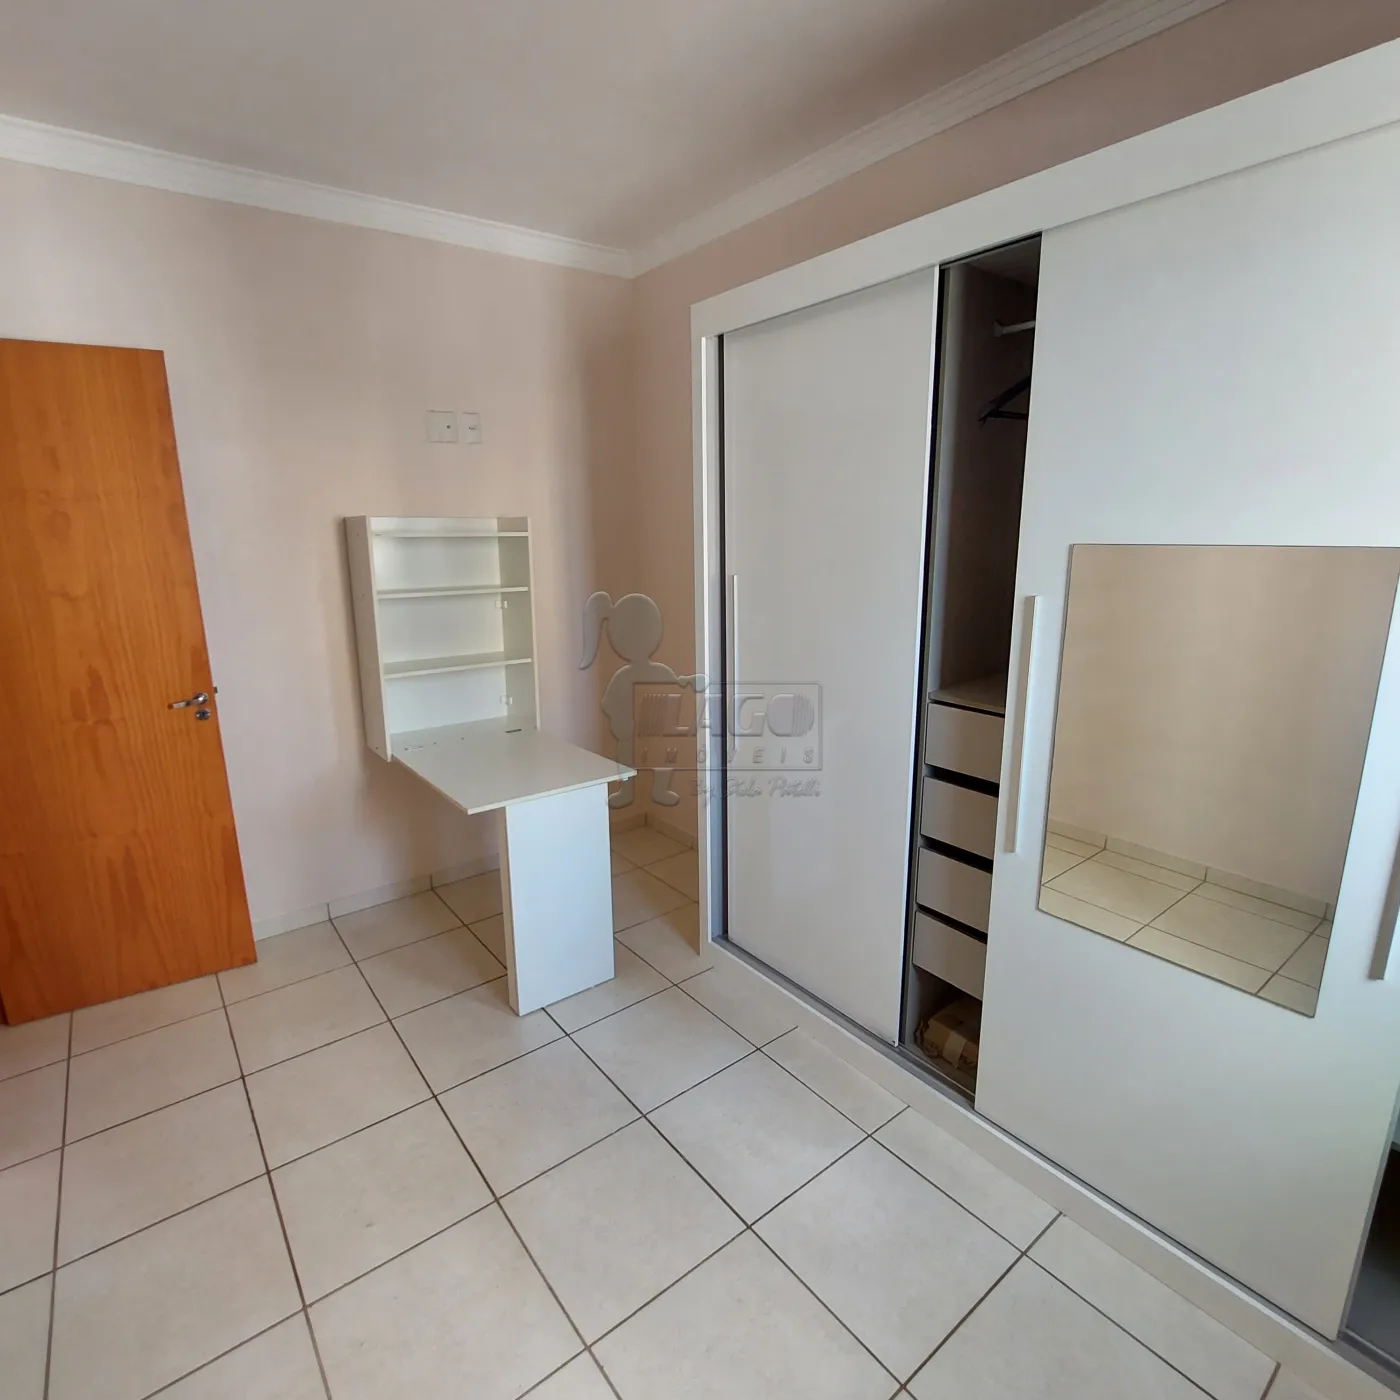 Comprar Apartamento / Padrão em Ribeirão Preto R$ 235.000,00 - Foto 13